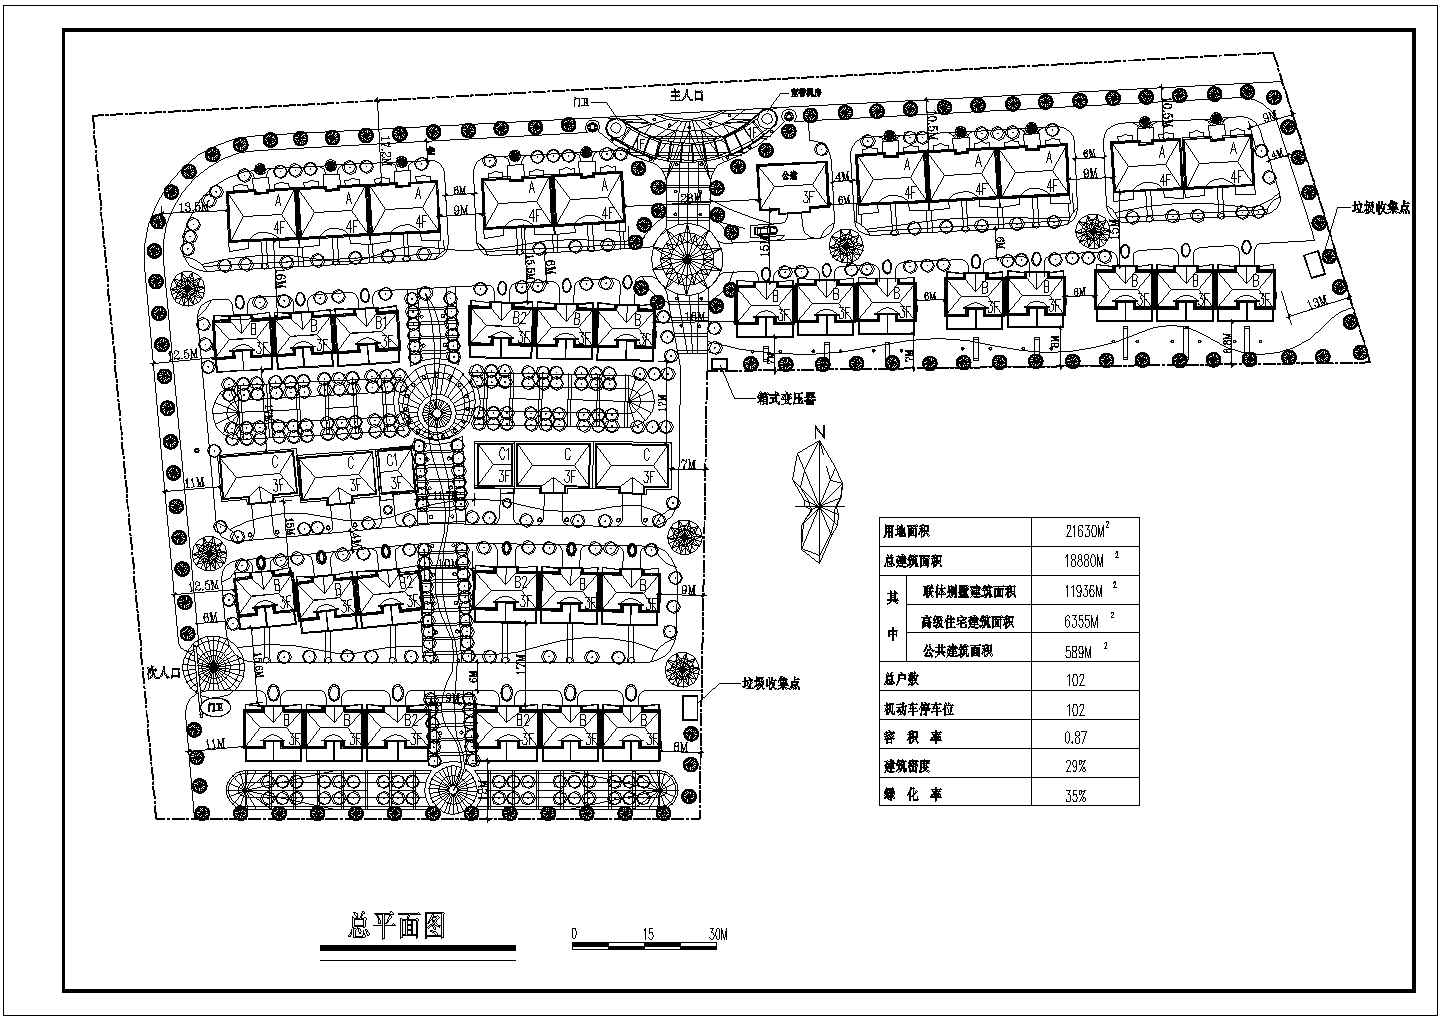 1万平方米连体别墅小区绿化规划设计cad图(含总平面图)